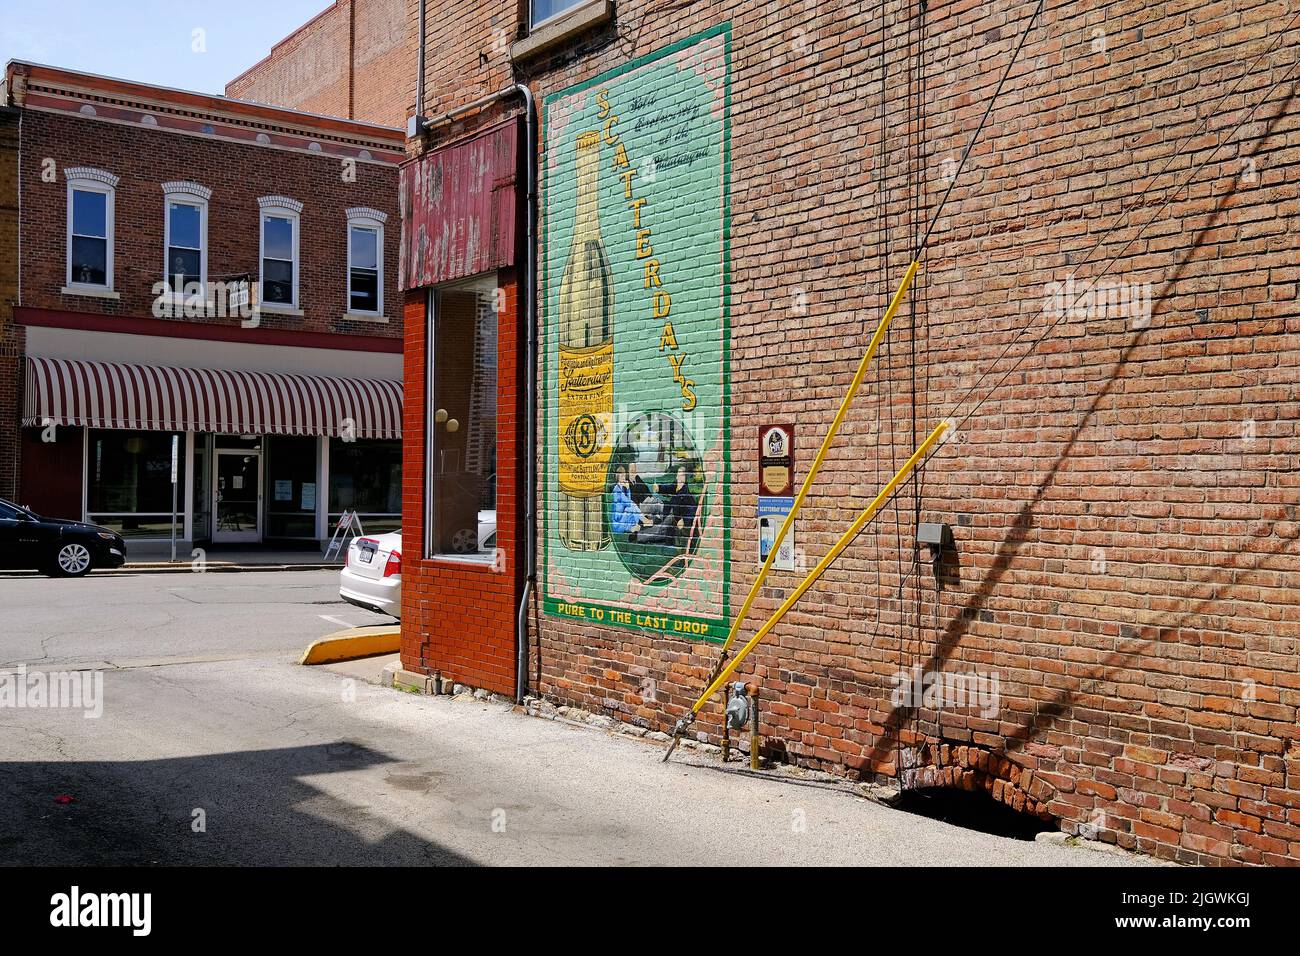 Murale nel centro storico di Pontiac, Illinois, Stati Uniti d'America Foto Stock